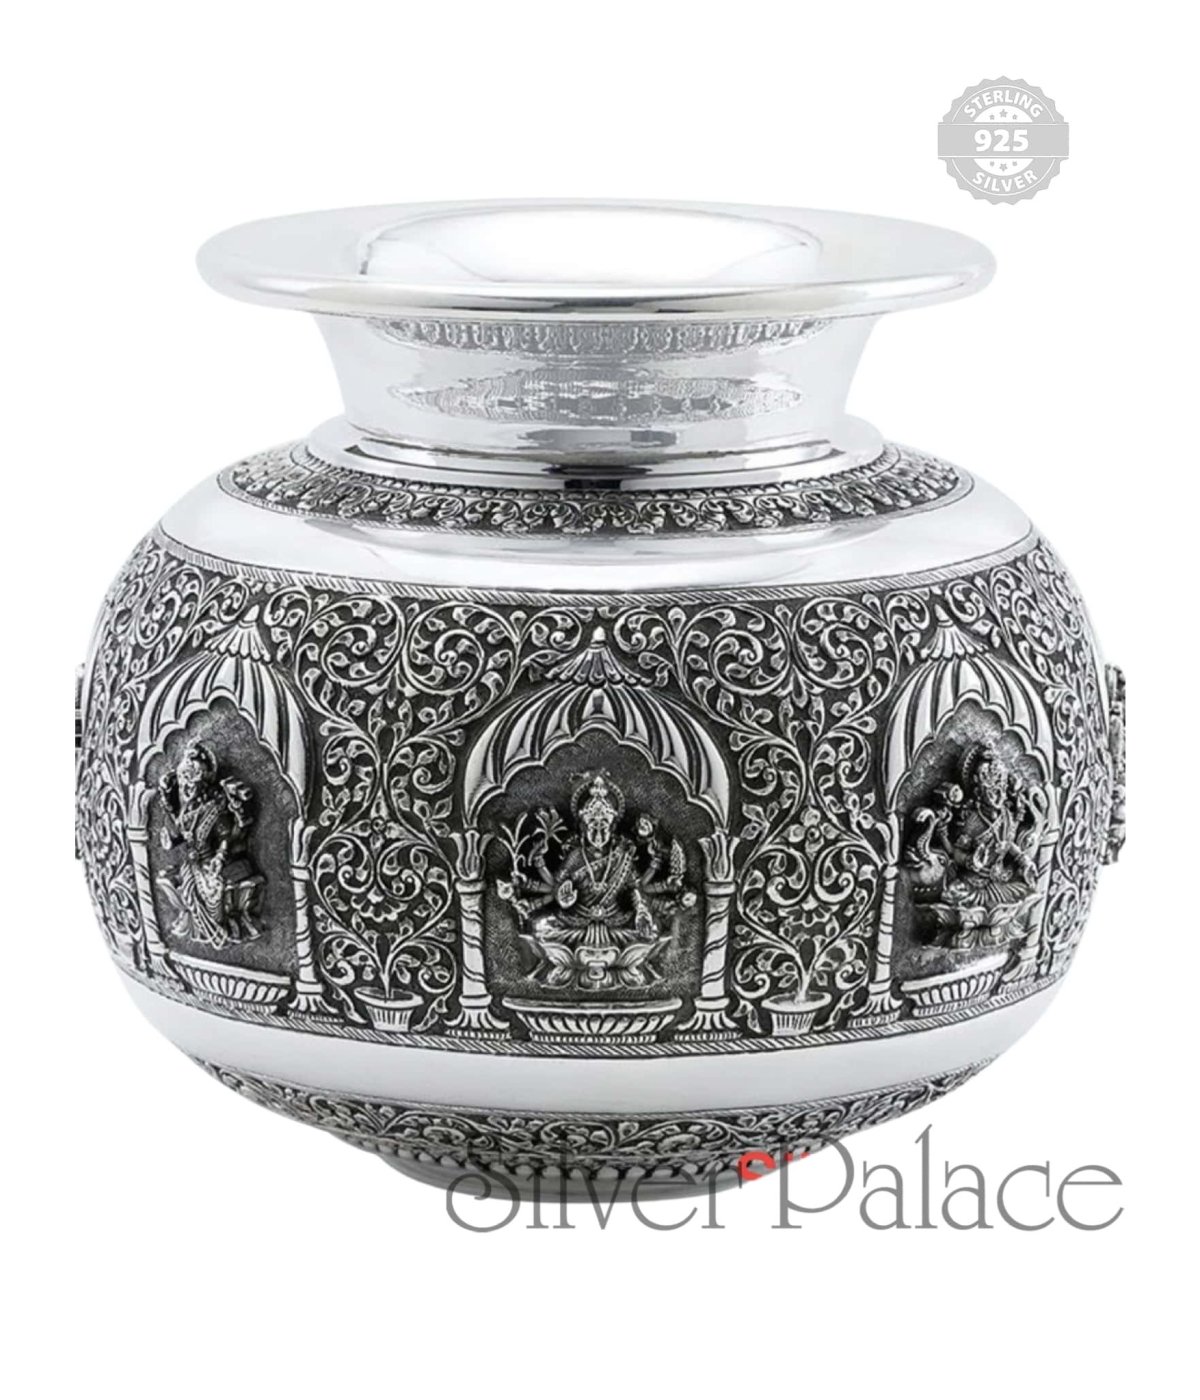 Astalakshmi Kodam Pot - Silver Palace